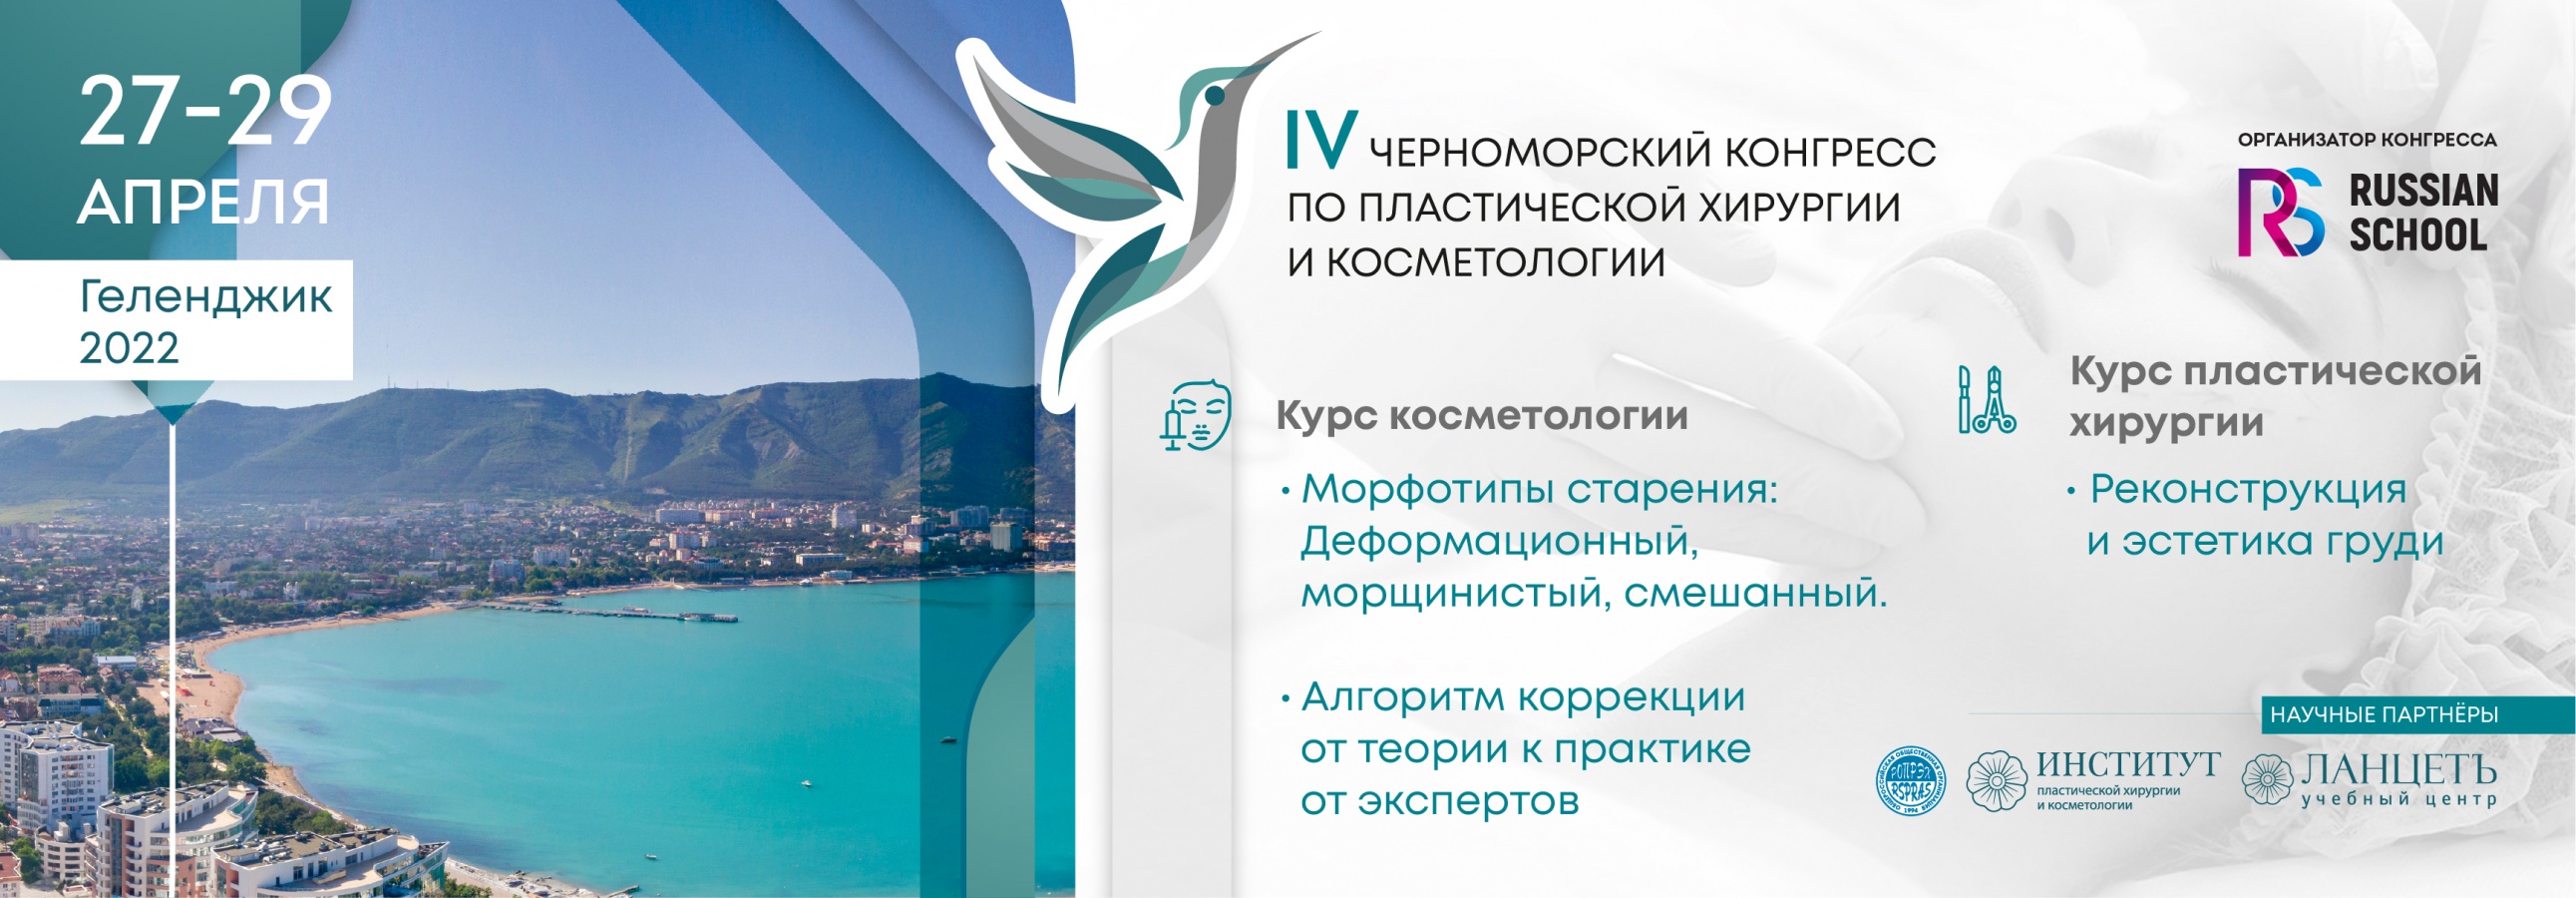 IV Черноморский конгресс по пластической хирургии и косметологии